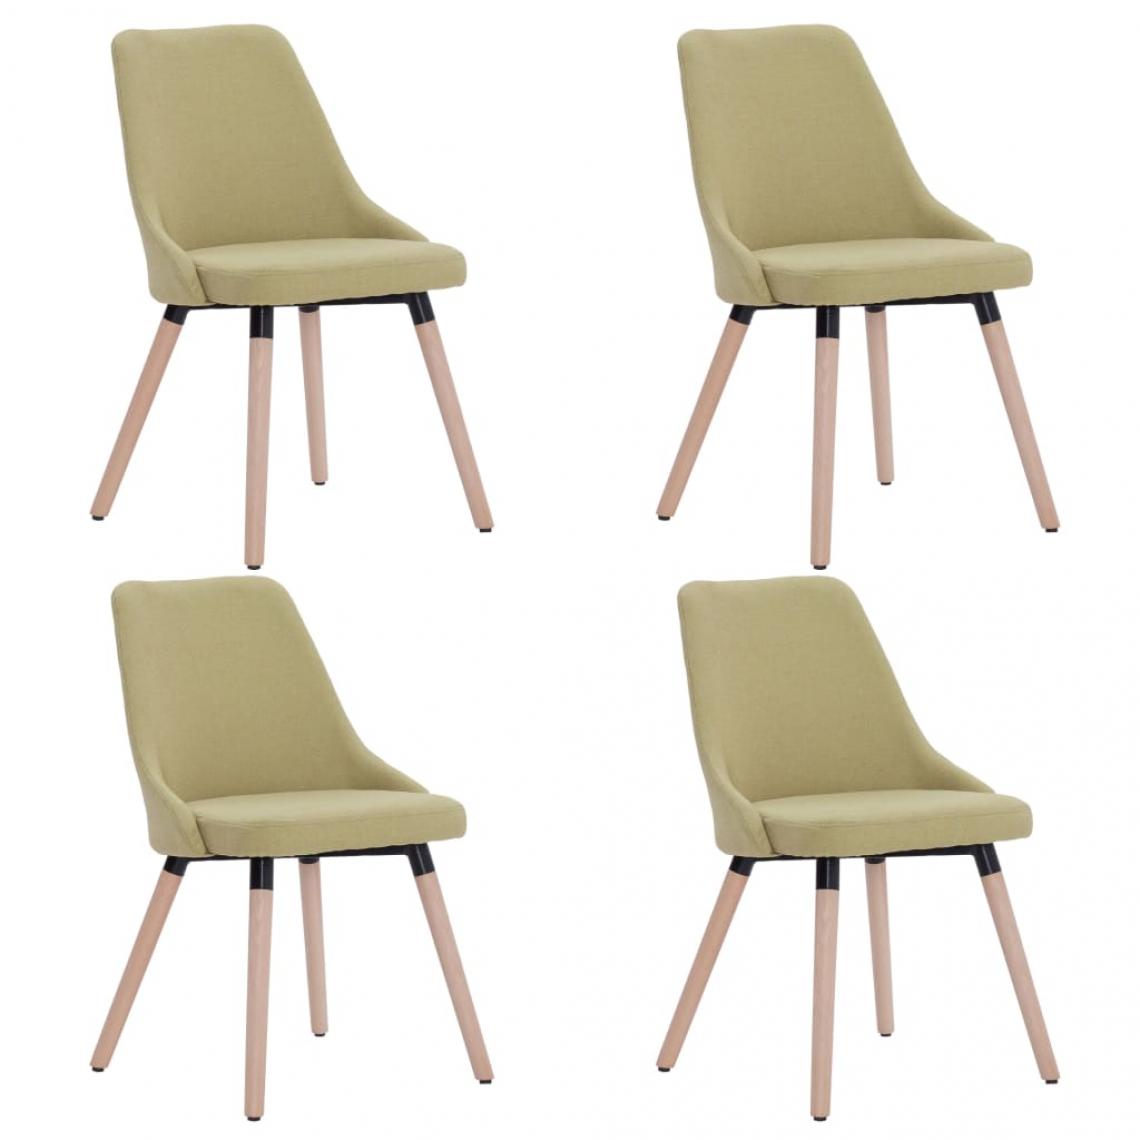 Decoshop26 - Lot de 4 chaises de salle à manger cuisine design moderne tissu vert CDS022046 - Chaises